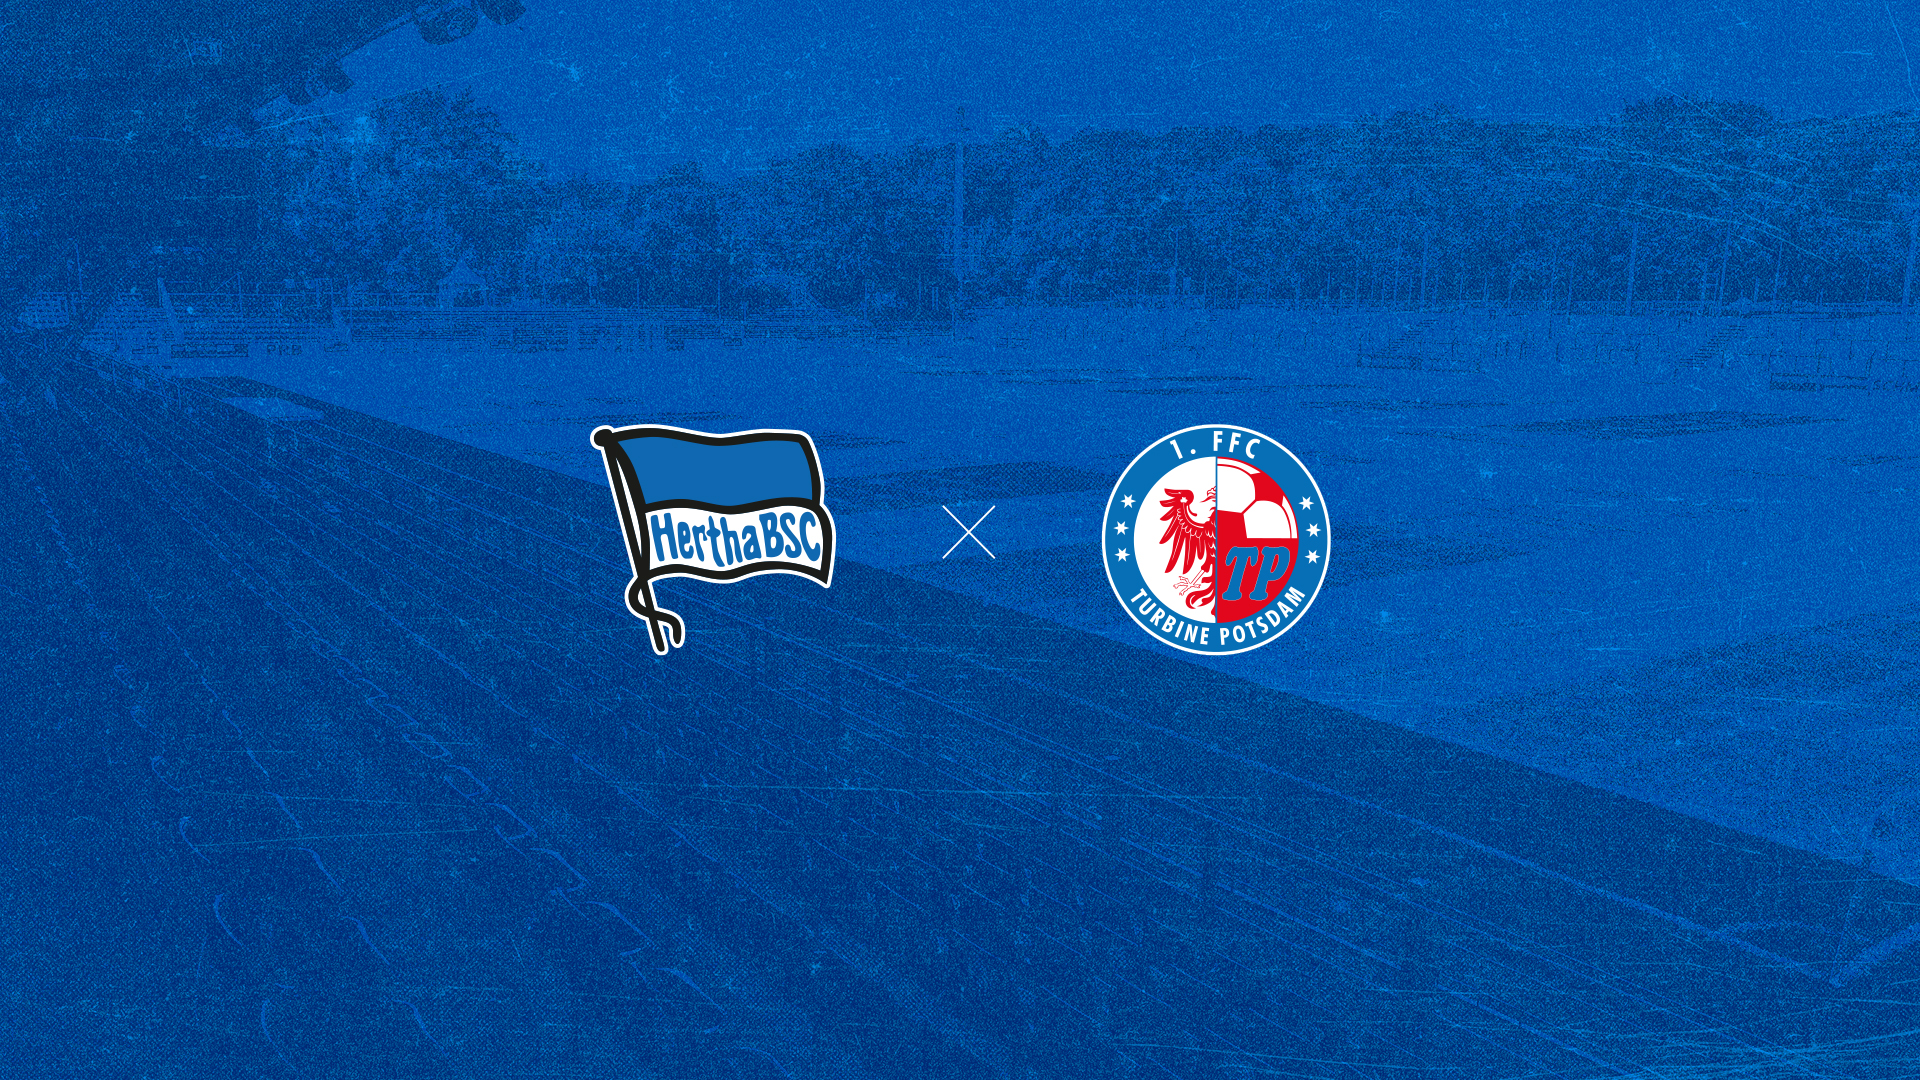 Die Logos von Hertha BSC und Turbine Potsdam auf einem blauen Hintergrund.